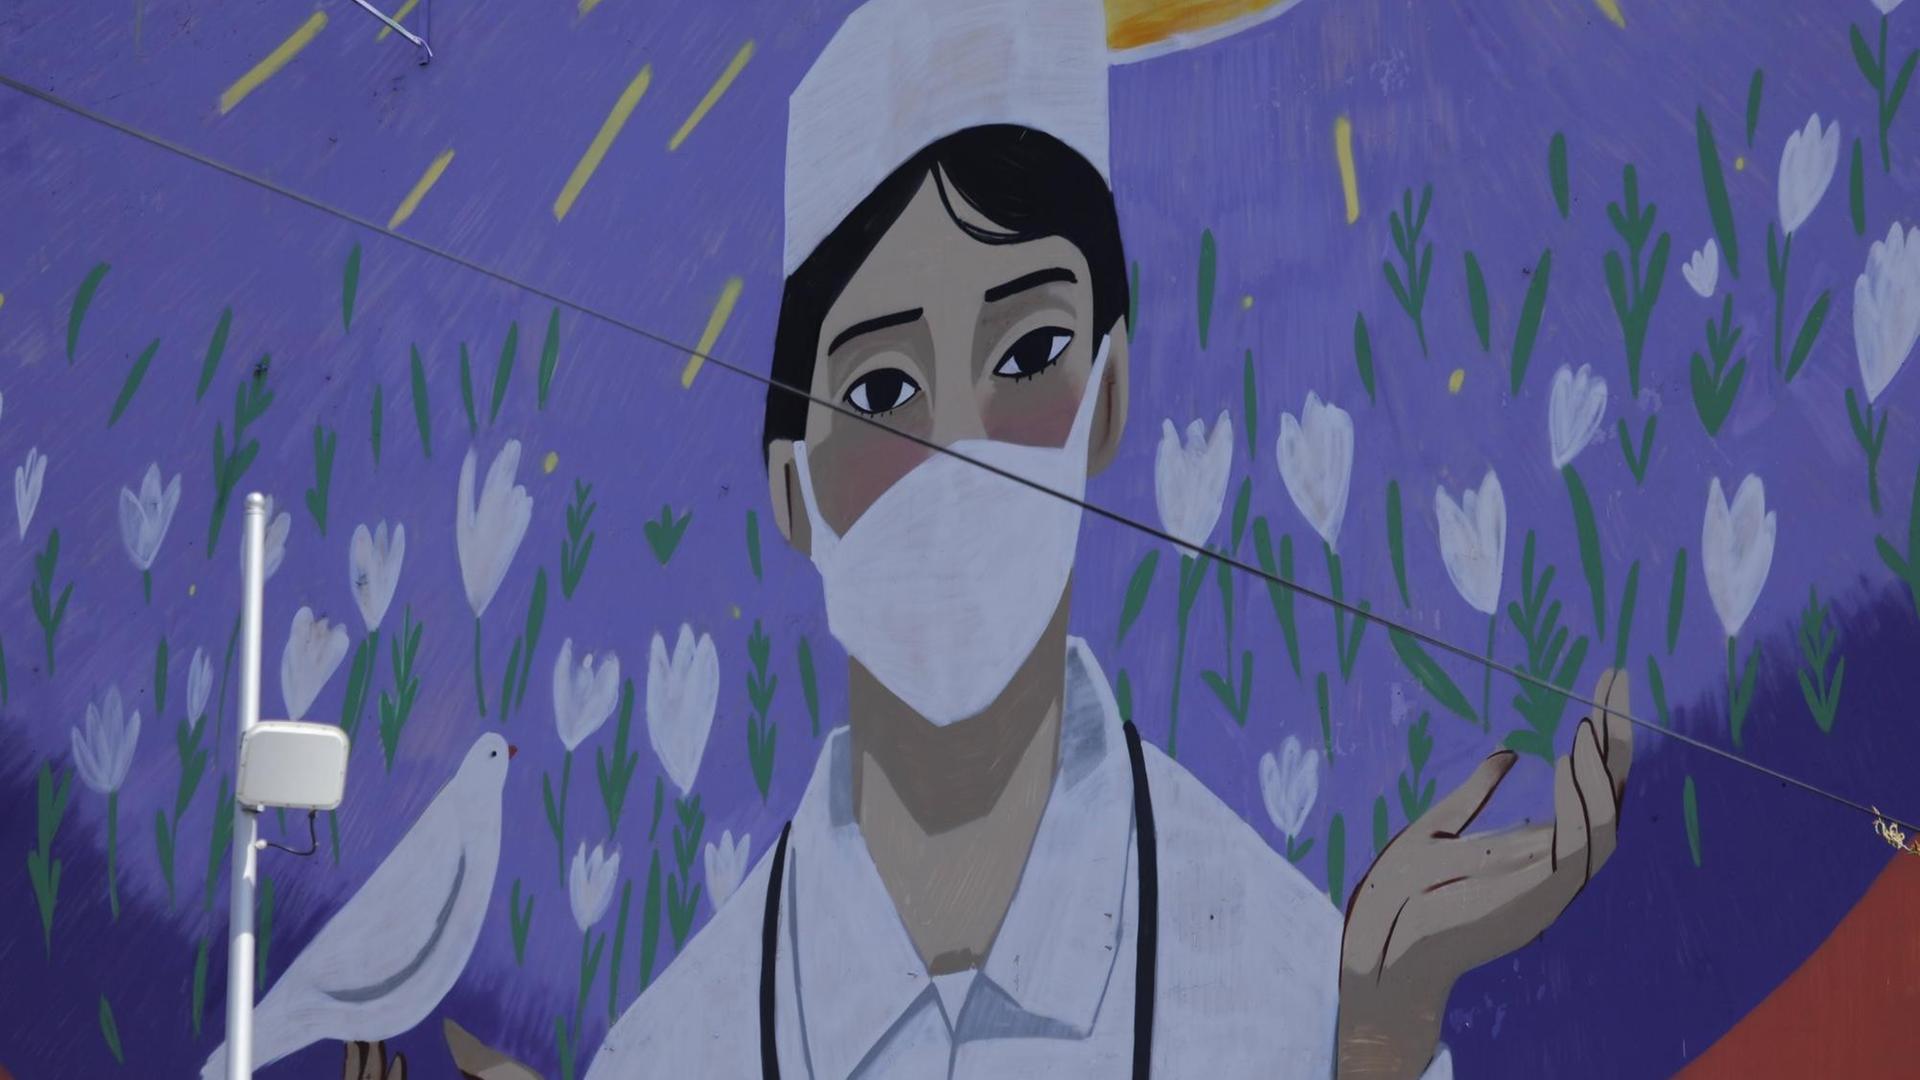 Wandgemälde im kasachischen Nur-Sultan, um die Arbeit der medizinischen Personals im Land zu würdigen